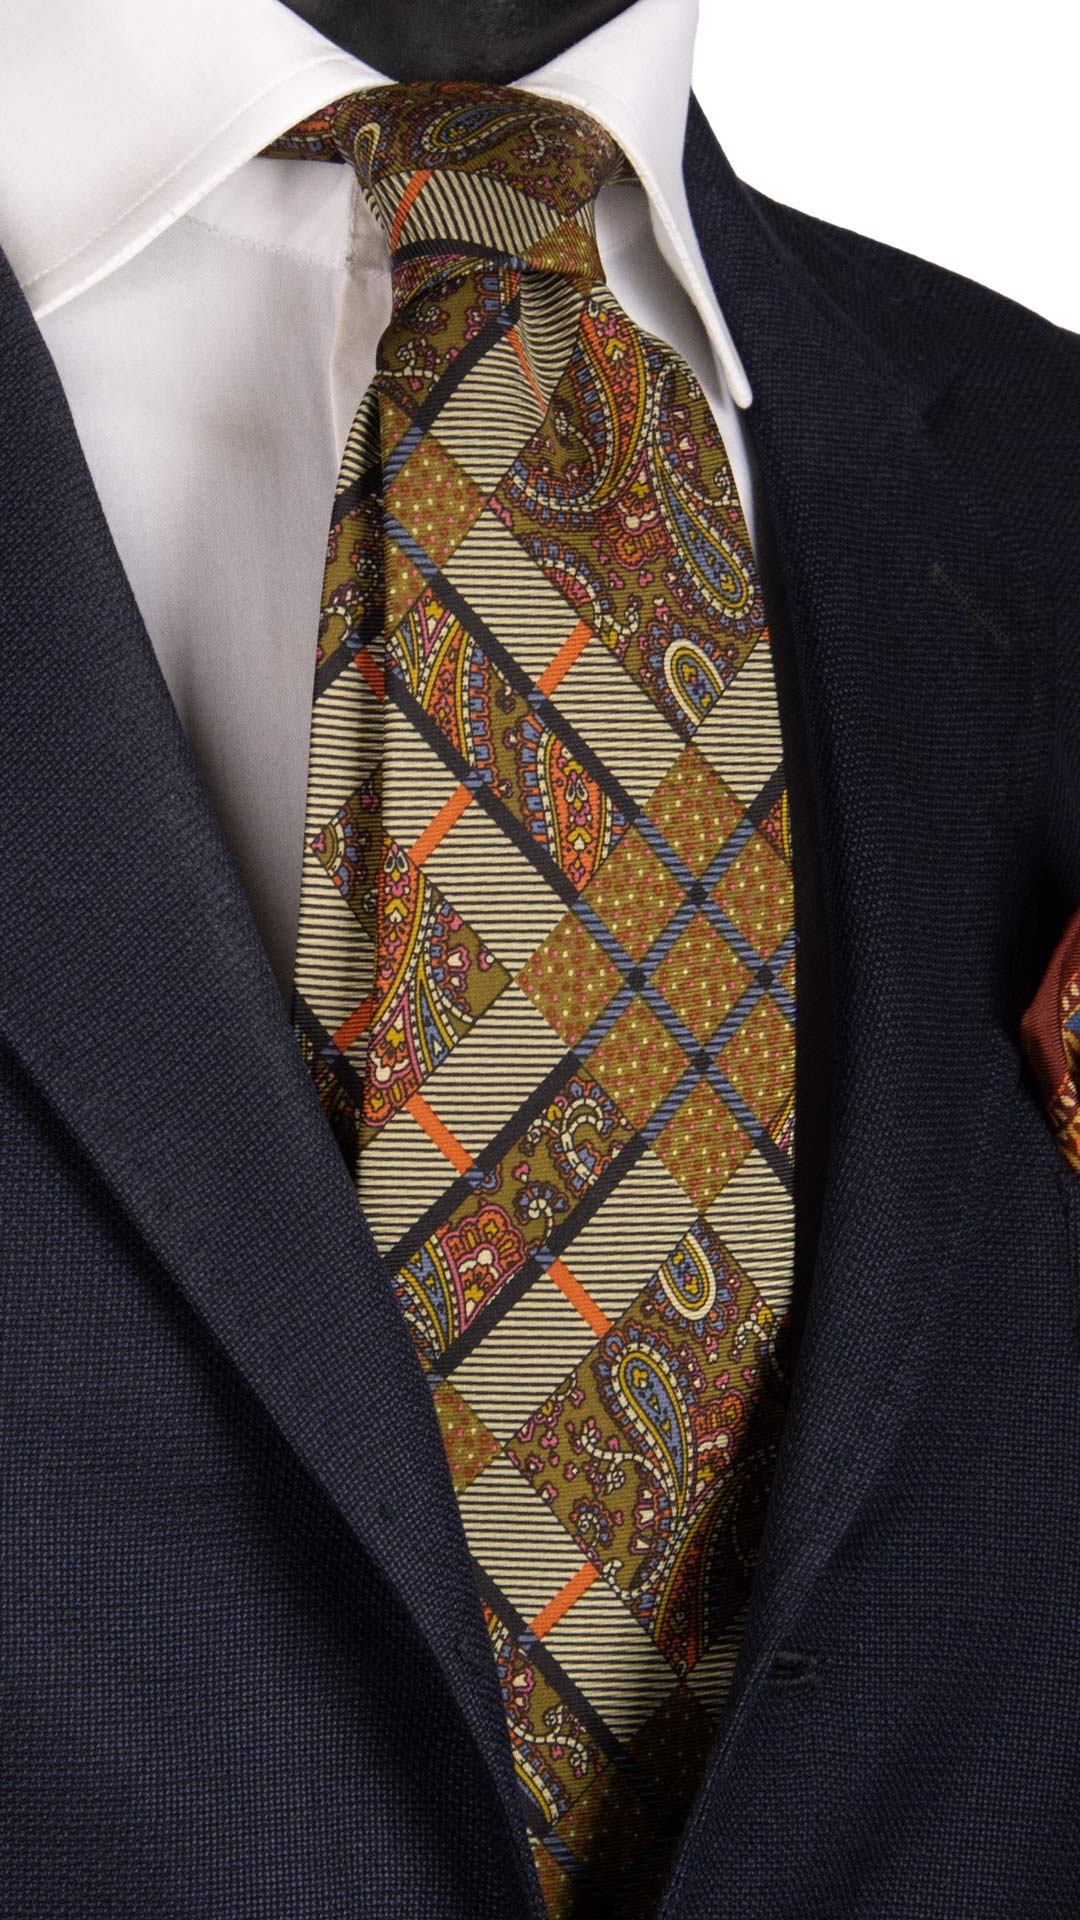 Cravatta Vintage in Twill di Seta Color Corda Fantasia Multicolor CV831 Made in Italy Graffeo Cravatte